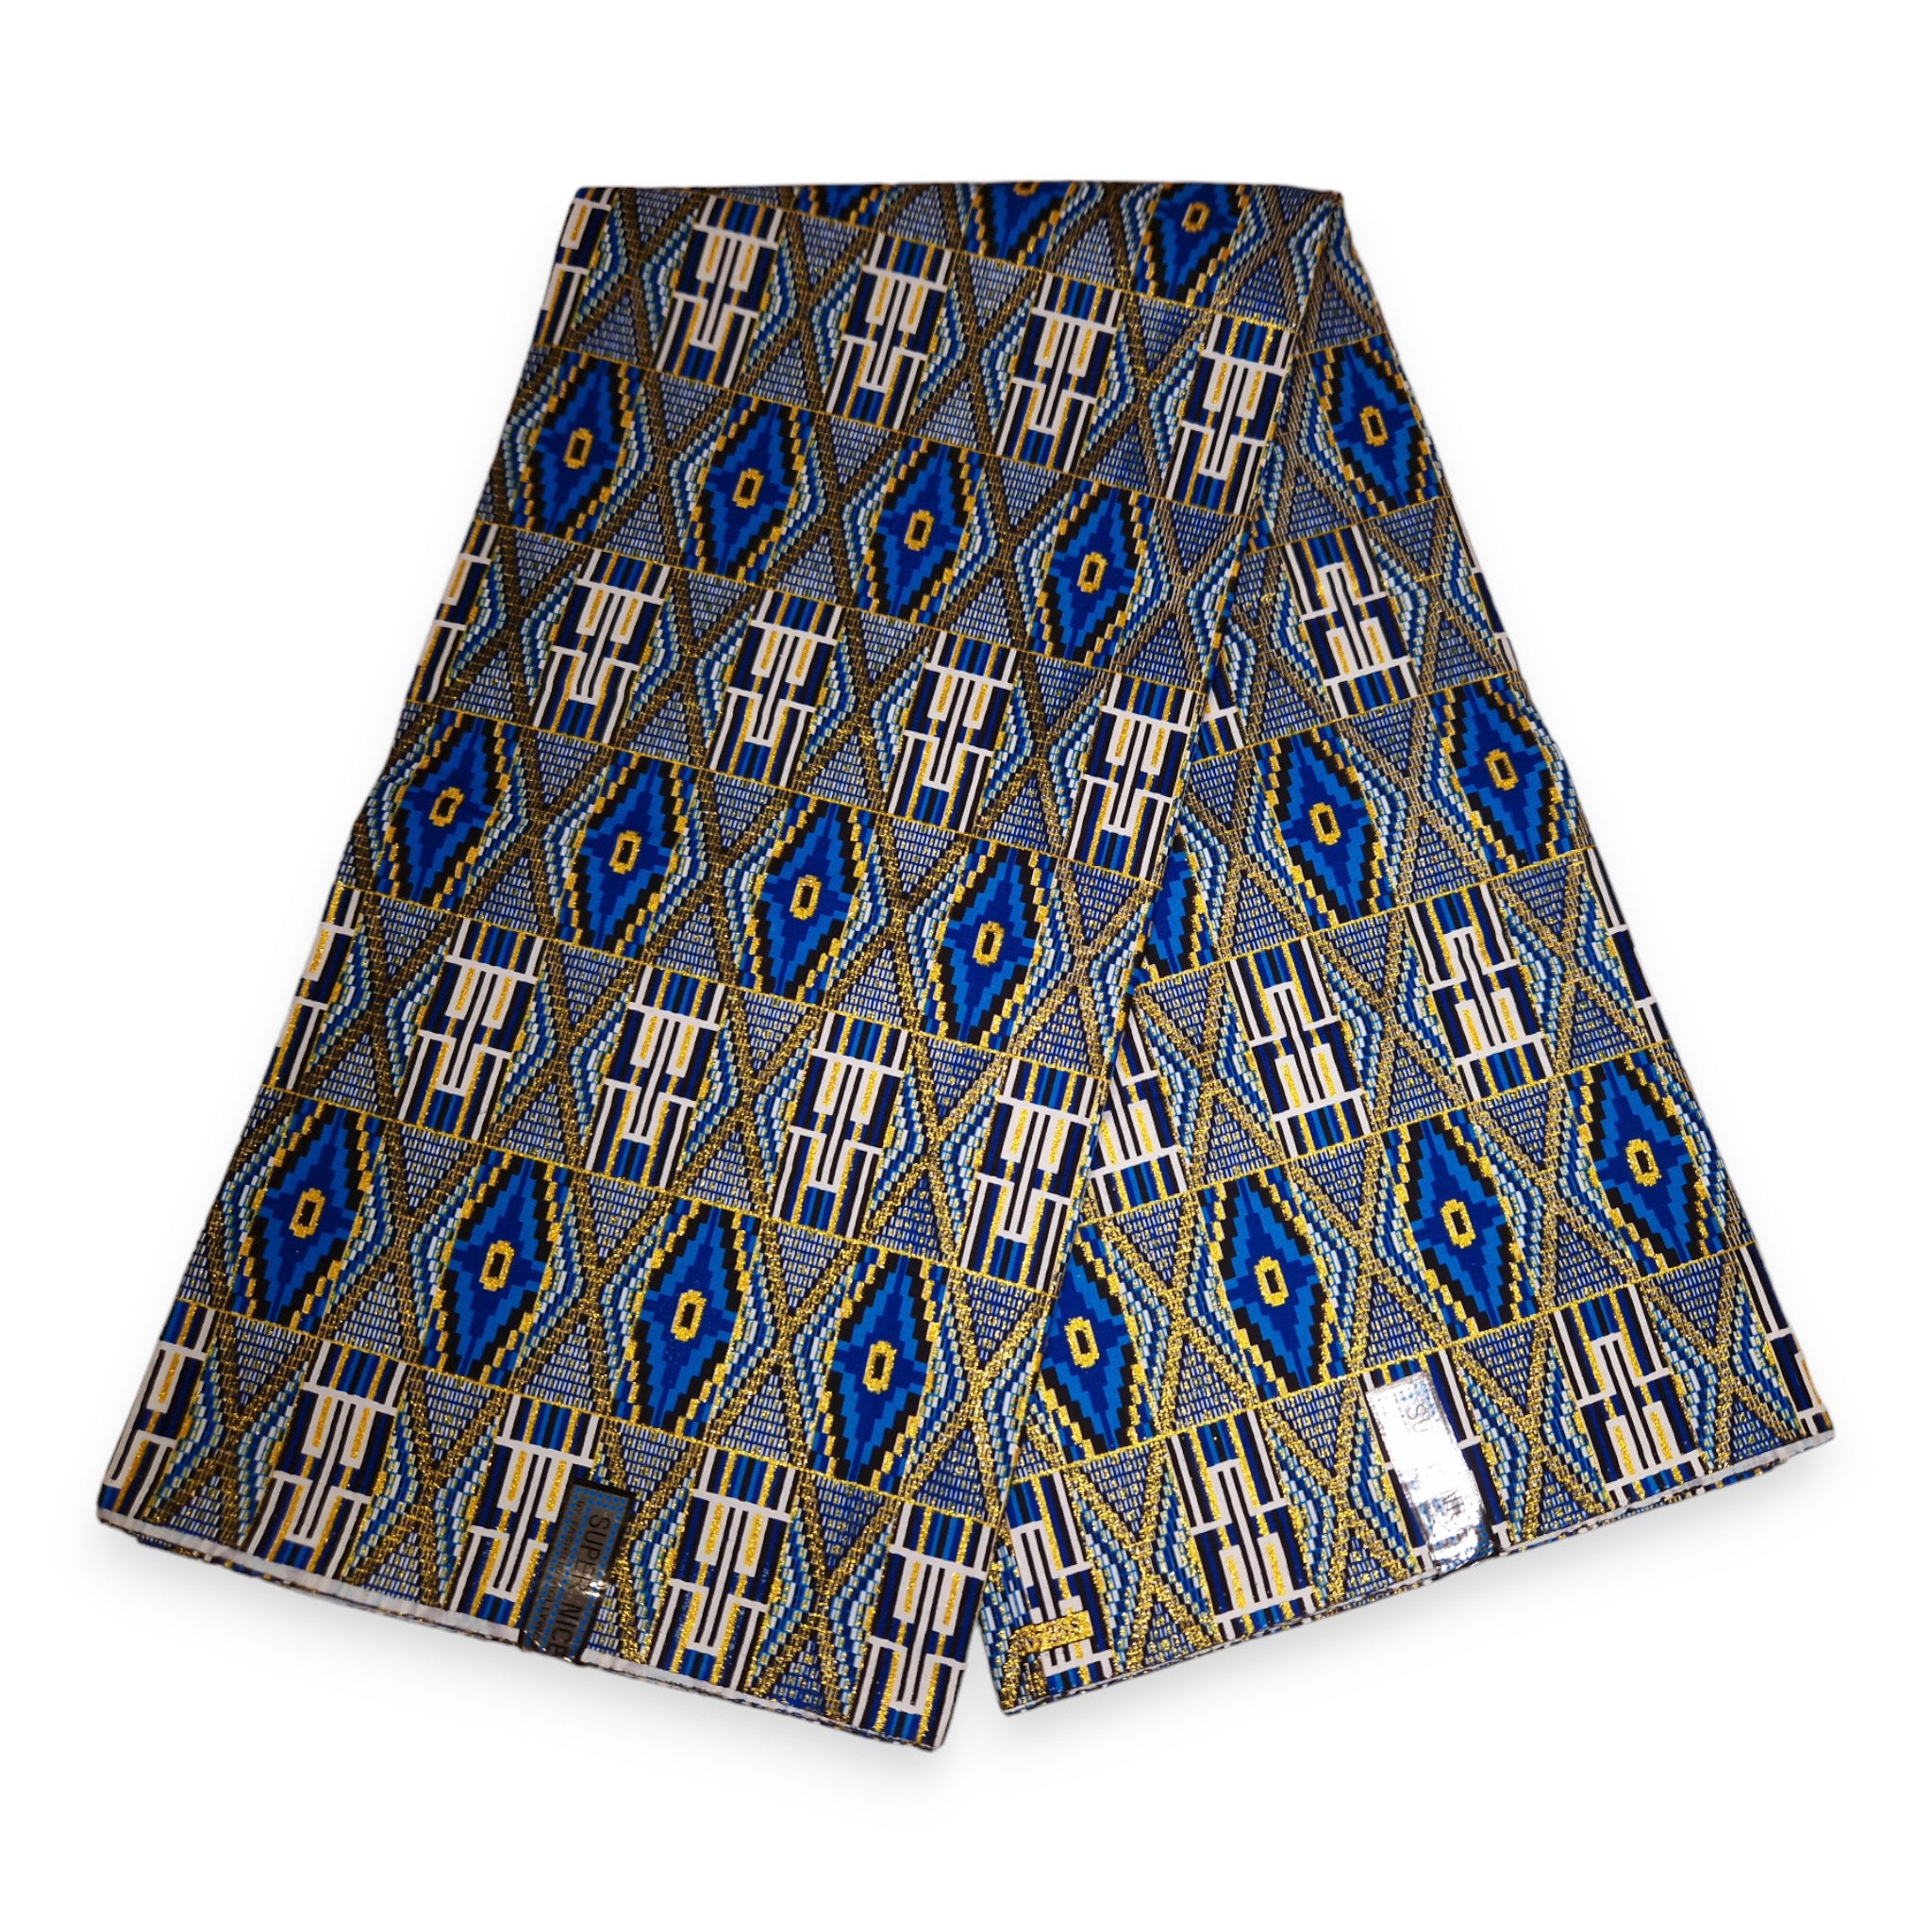 Afrikaanse stof - Exclusief versierd met glittereffecten 100% katoen - PO-5020 Kente Blauw Goud